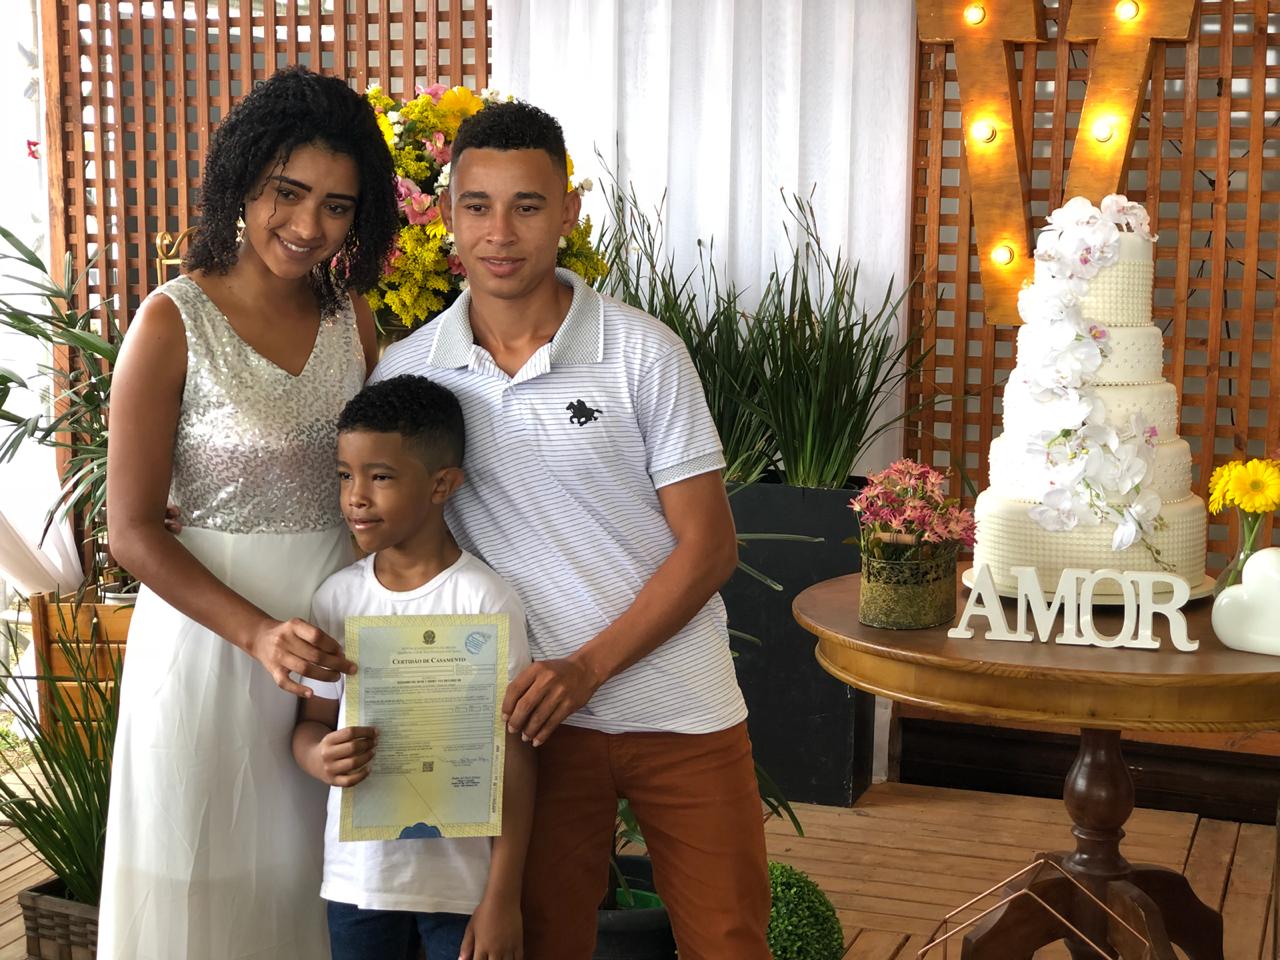 Prefeitura de São Mateus, através da Secretaria Municipal de Assistência Social realiza o Casamento Comunitário